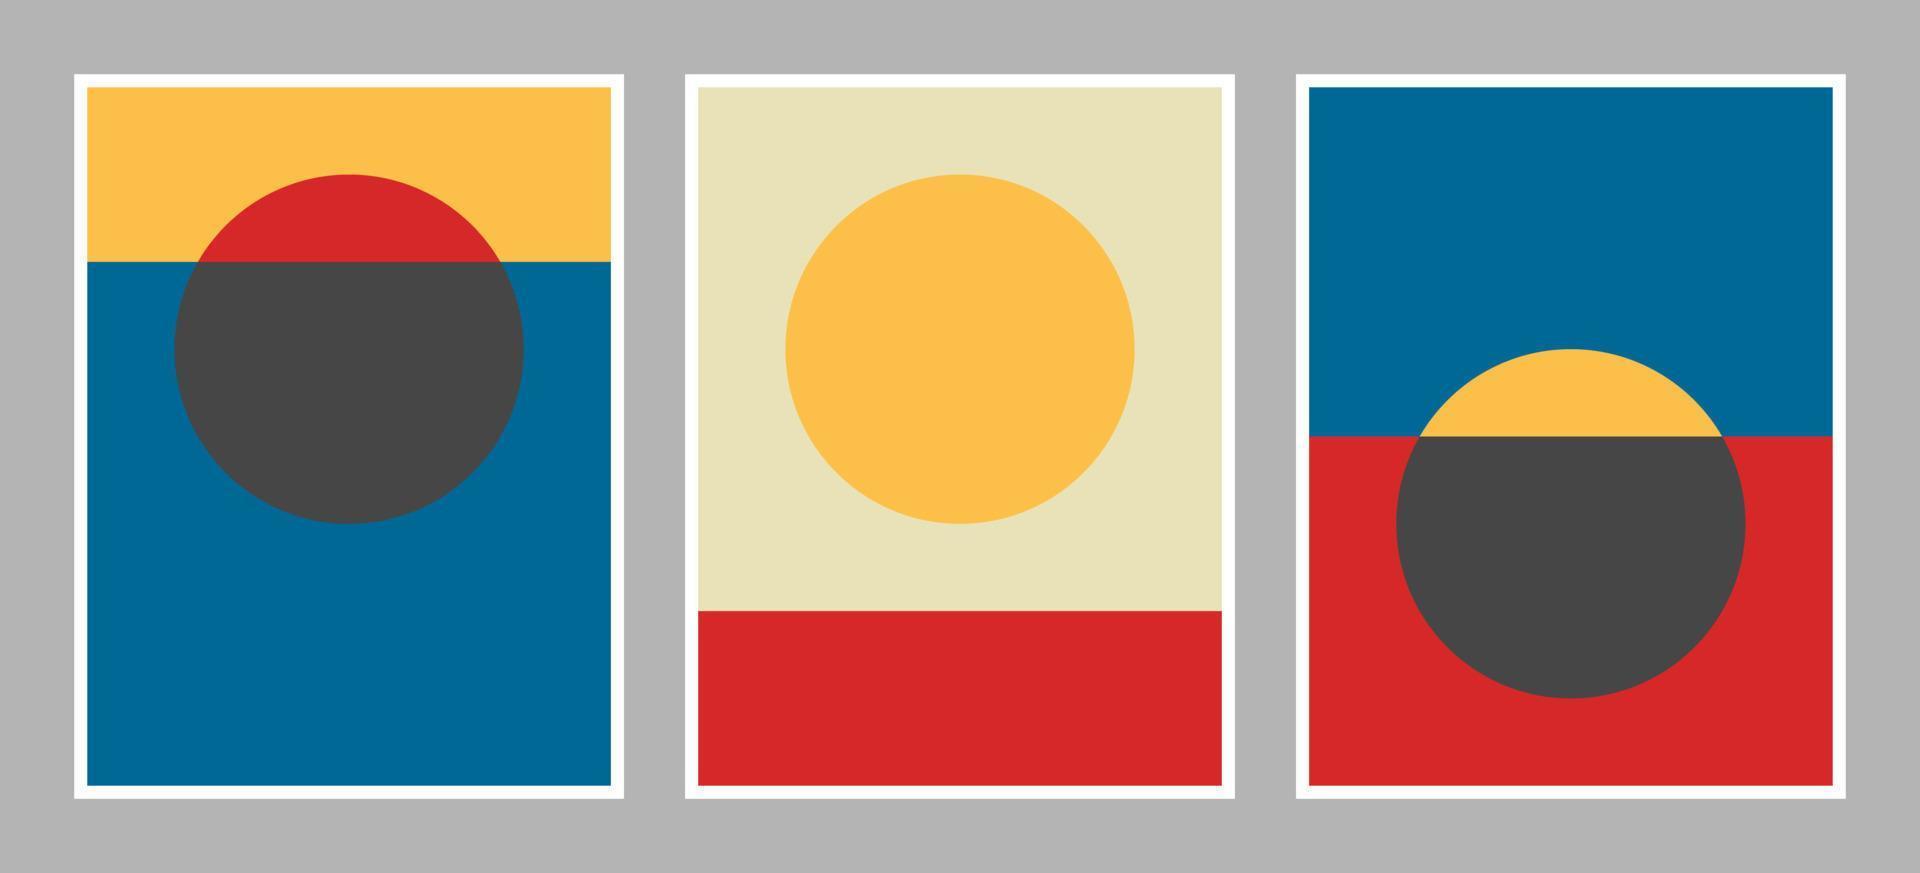 sfondo moderno bauhaus con forme geometriche di colore rosso, giallo, blu, nero e bianco vettore